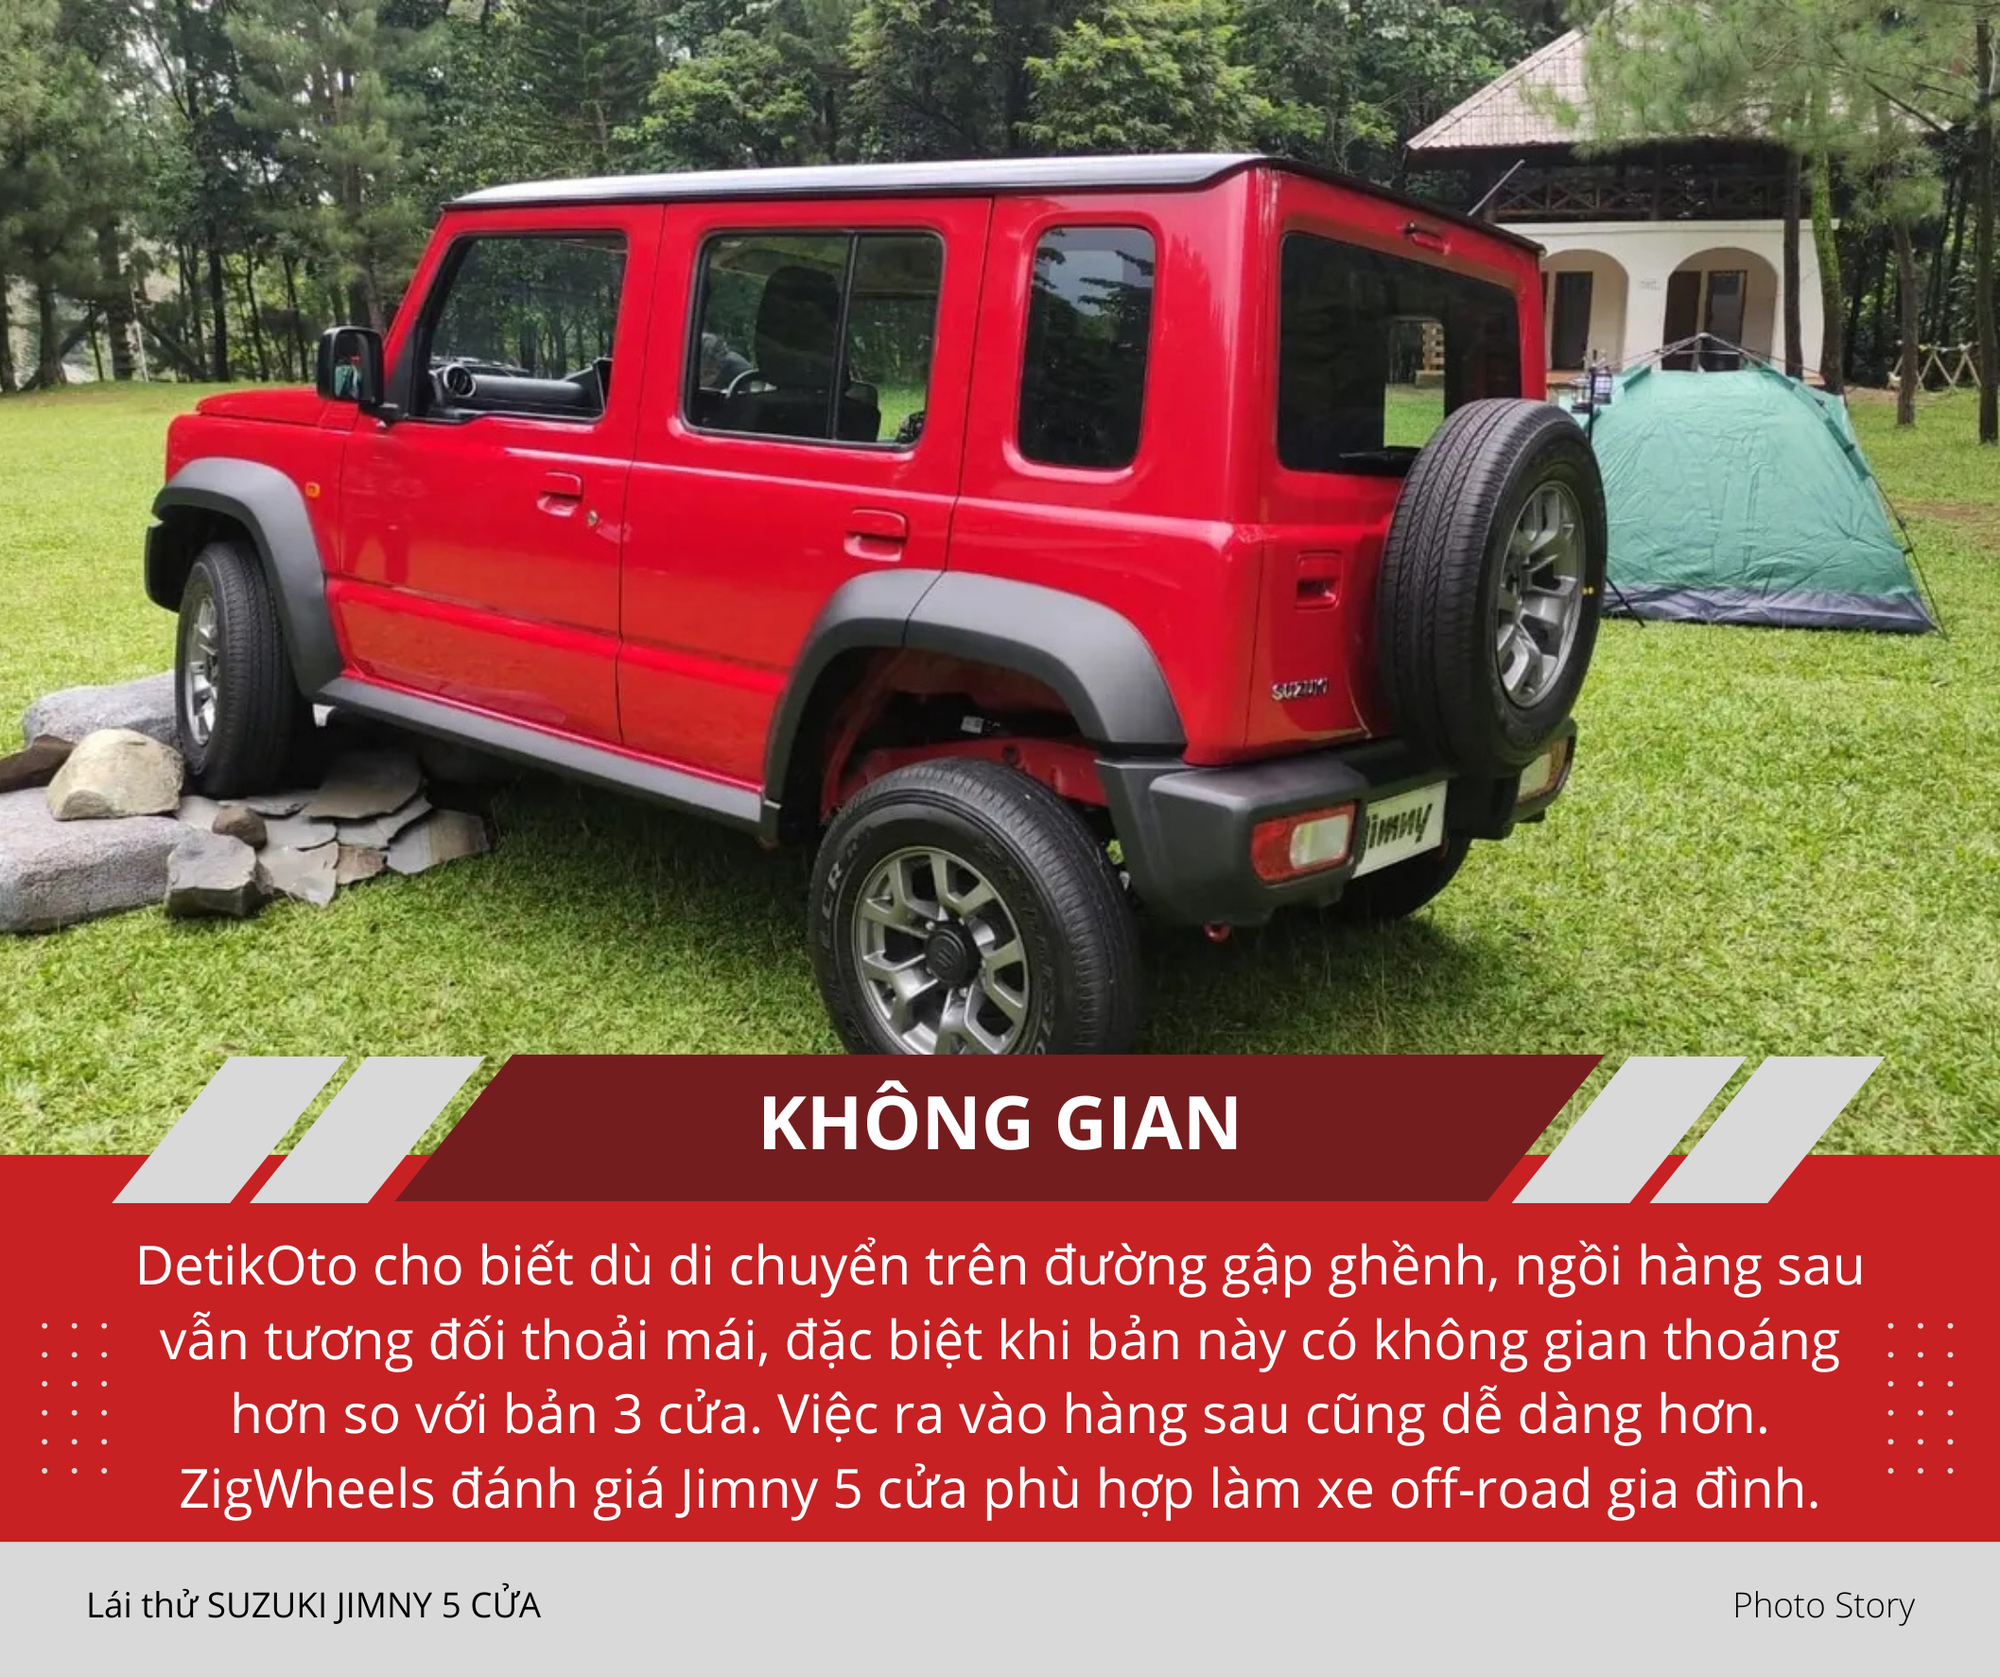 Mang Suzuki Jimny 5 cửa vào rừng 'hành hạ': Nhiều điểm hơn hẳn bản 3 cửa sắp ra mắt Việt Nam, thoải mái cho cả nhà cùng off-road- Ảnh 12.